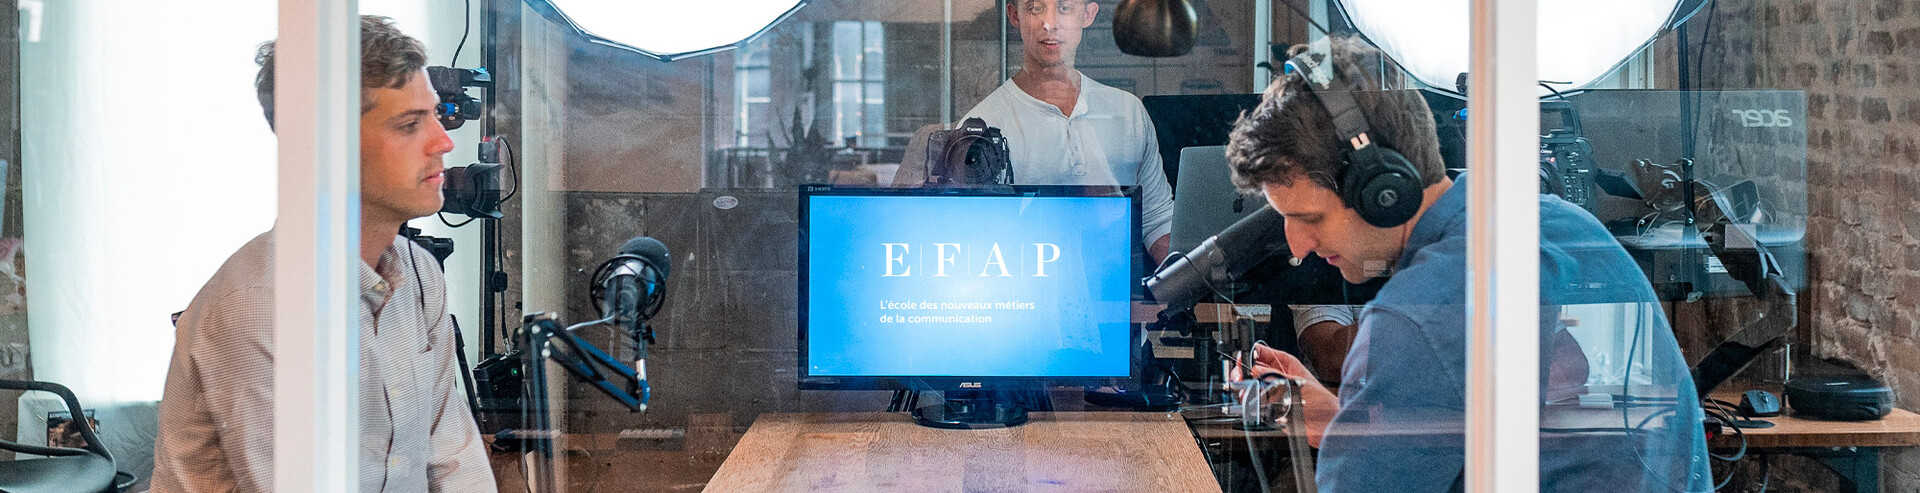 Formation attaché de presse - Formation relations presse EFAP